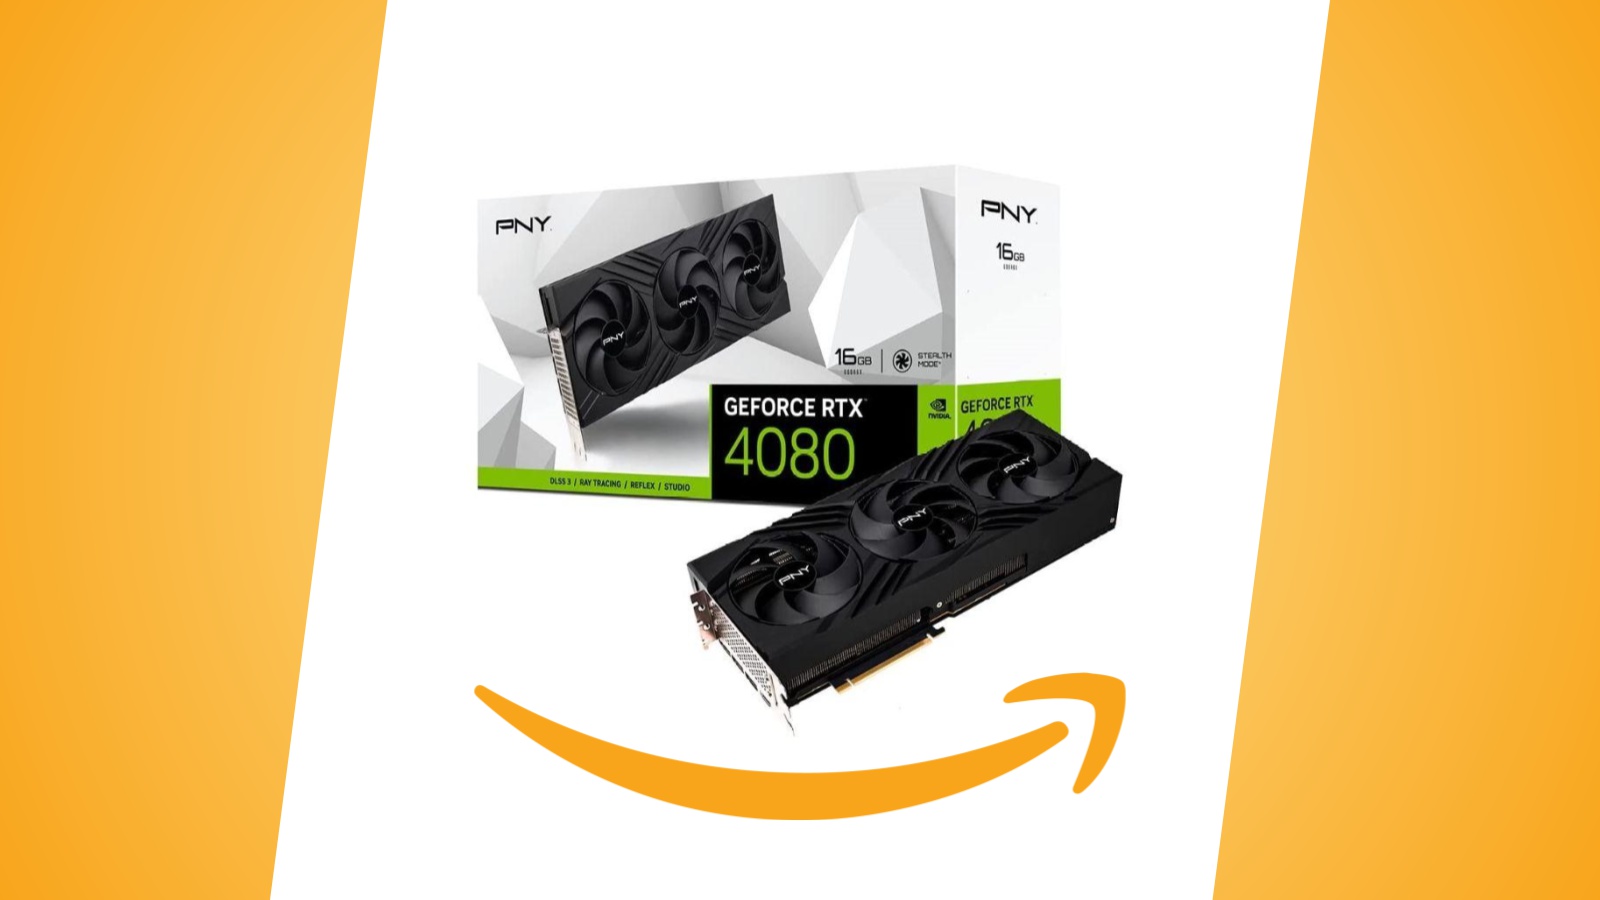 Offerte Amazon: scheda grafica PNY GeForce RTX 4080 da 16 GB al prezzo minimo storico